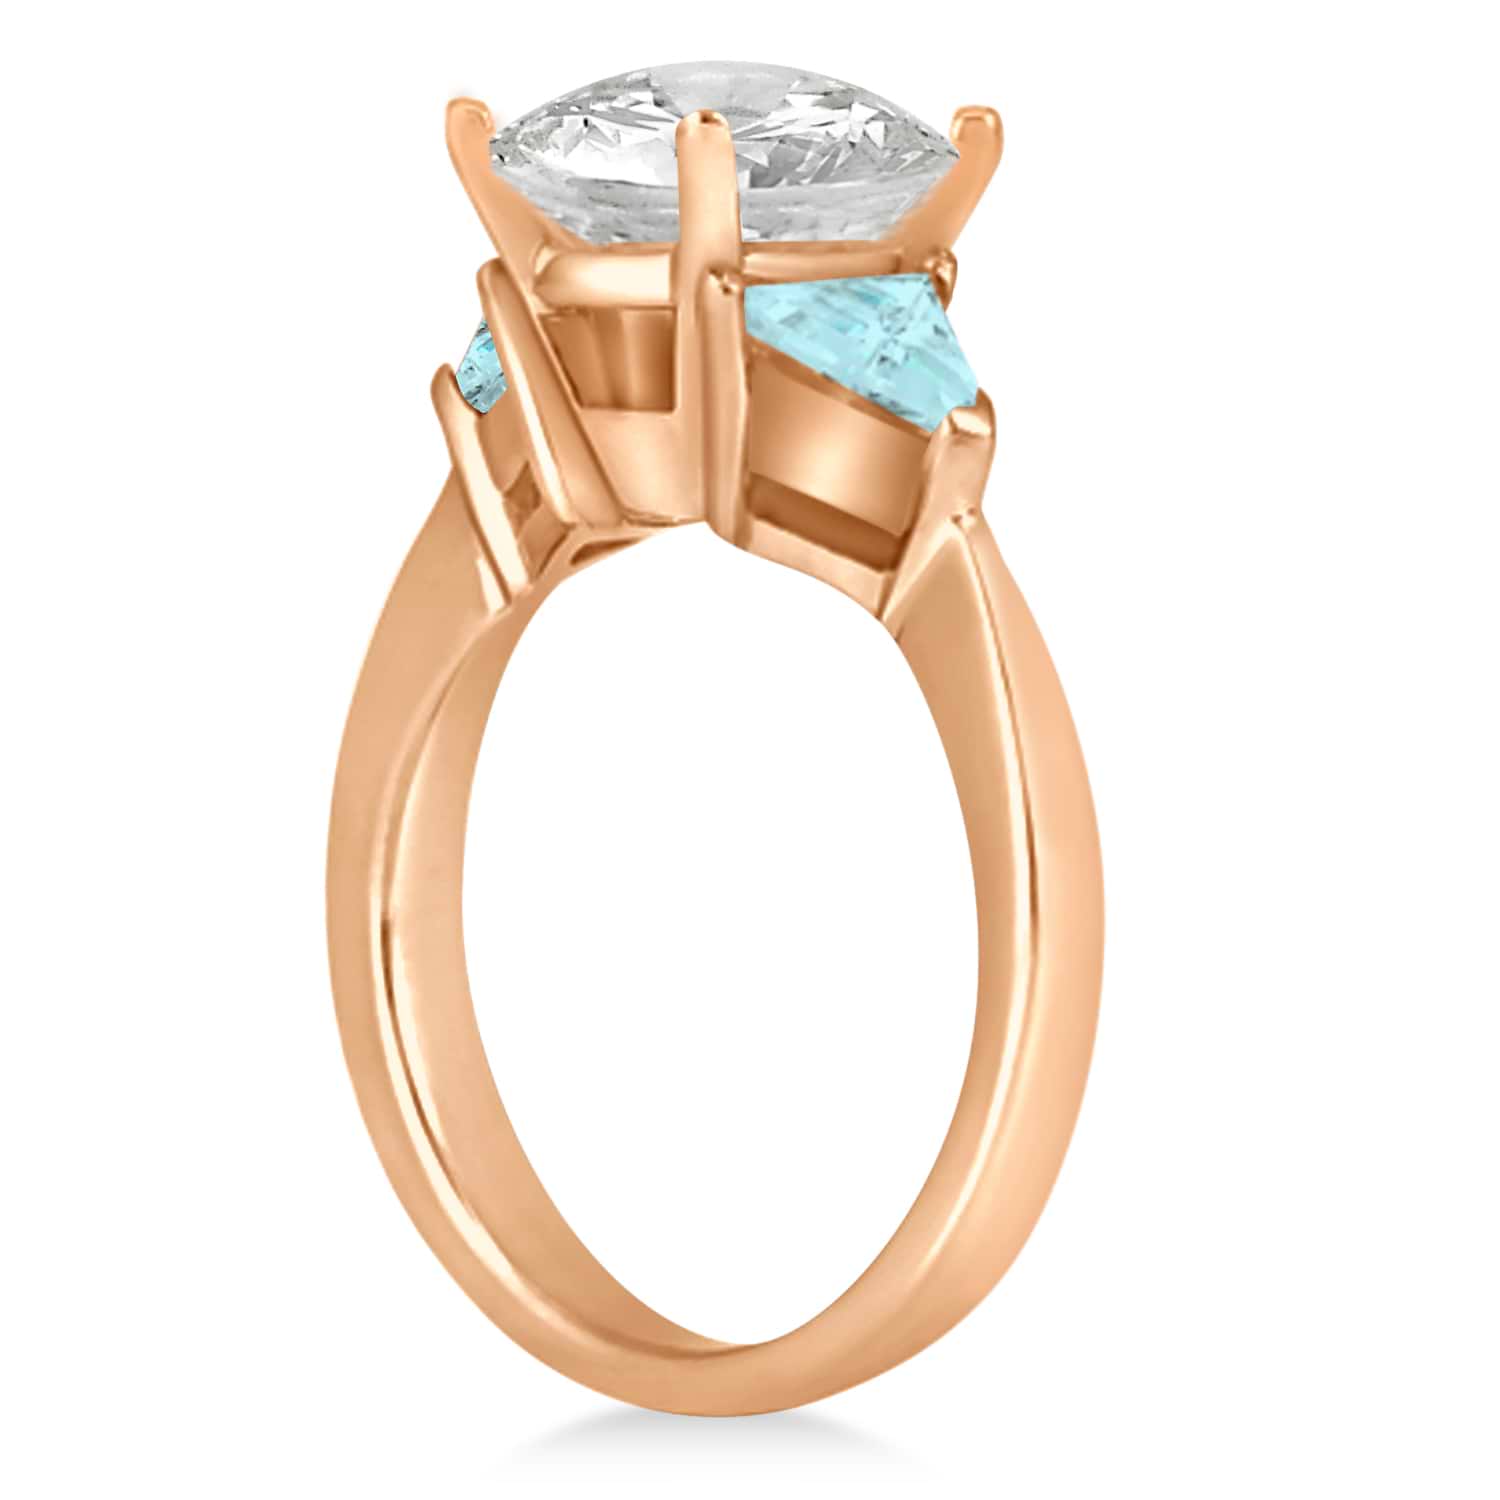 Aquamarine Three Stone Trilliant Engagement Ring 14k Rose Gold (0.70ct)